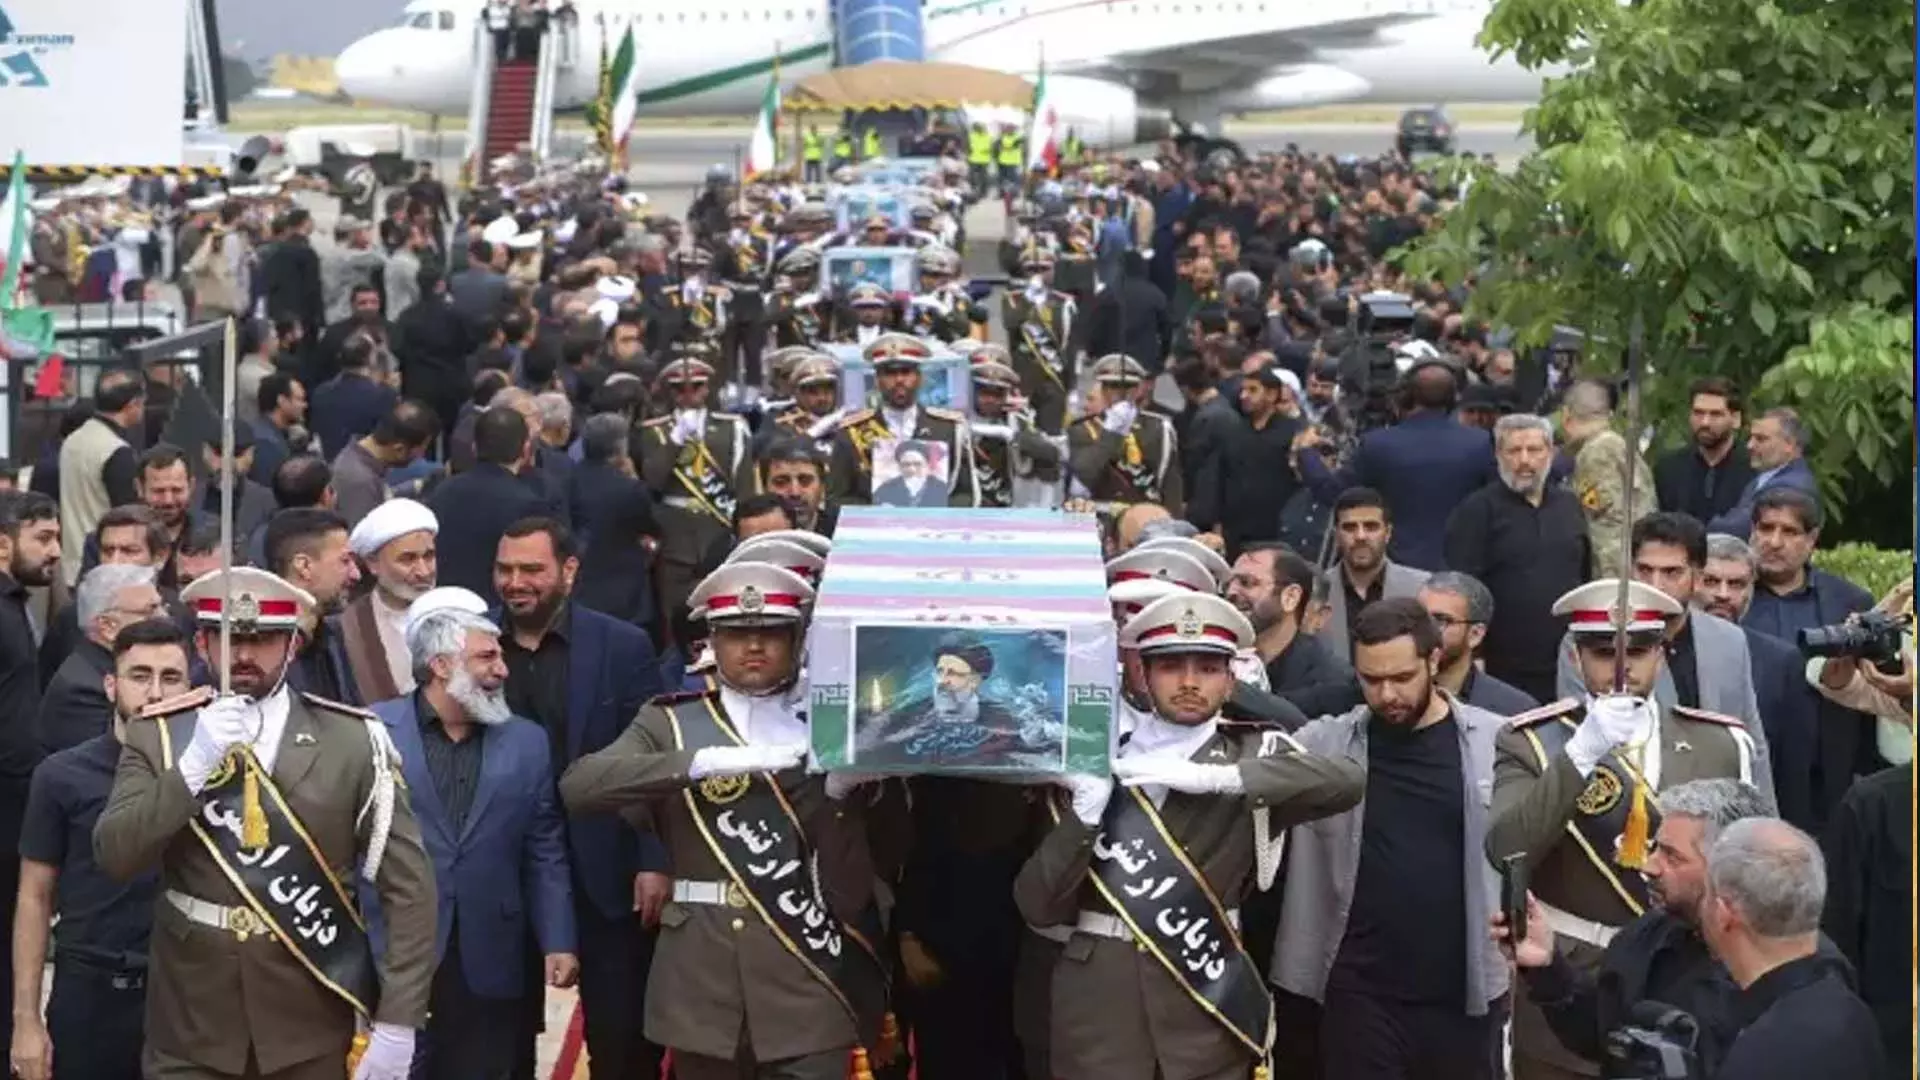 ईरान के सर्वोच्च नेता ने राष्ट्रपति और अन्य लोगों के अंतिम संस्कार की अध्यक्षता की